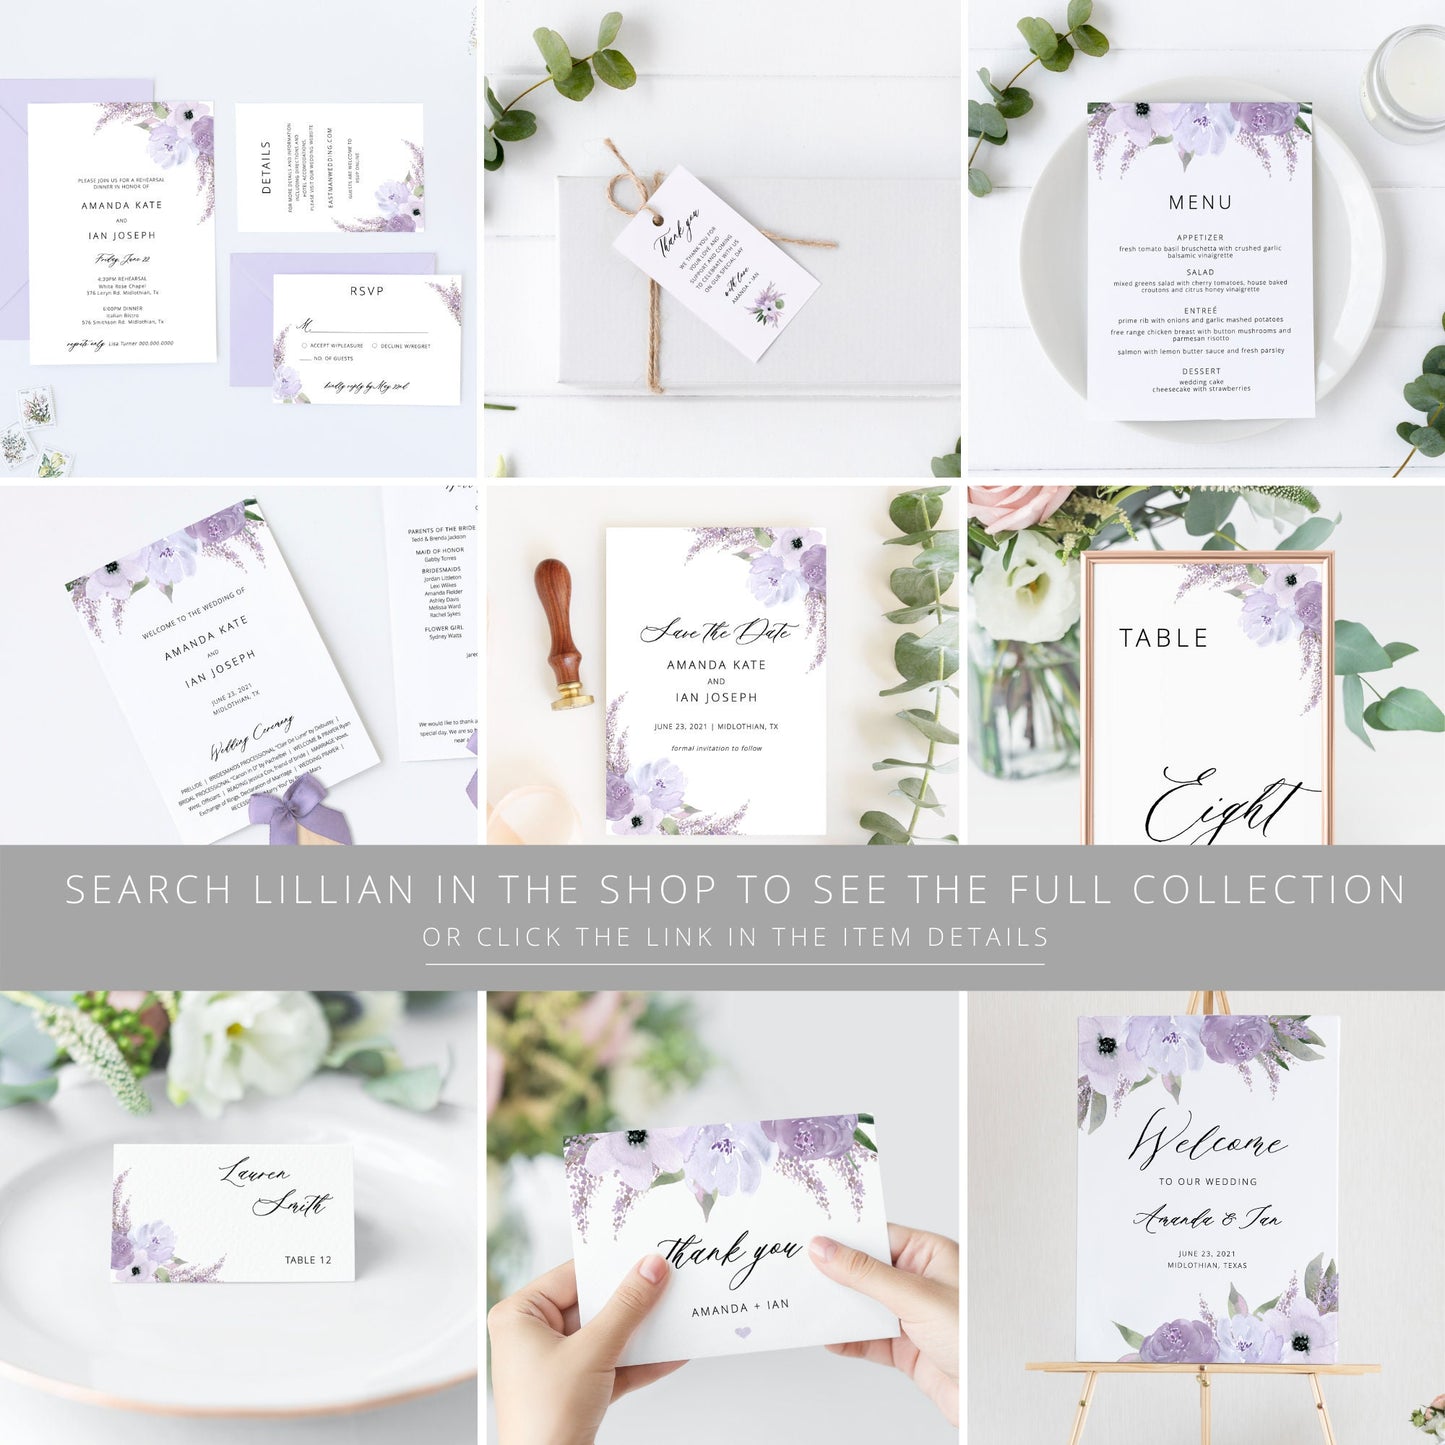 Editable Lavender Favors Sign Bridal Shower Favor Sign Purple Floral Wedding Sign Template